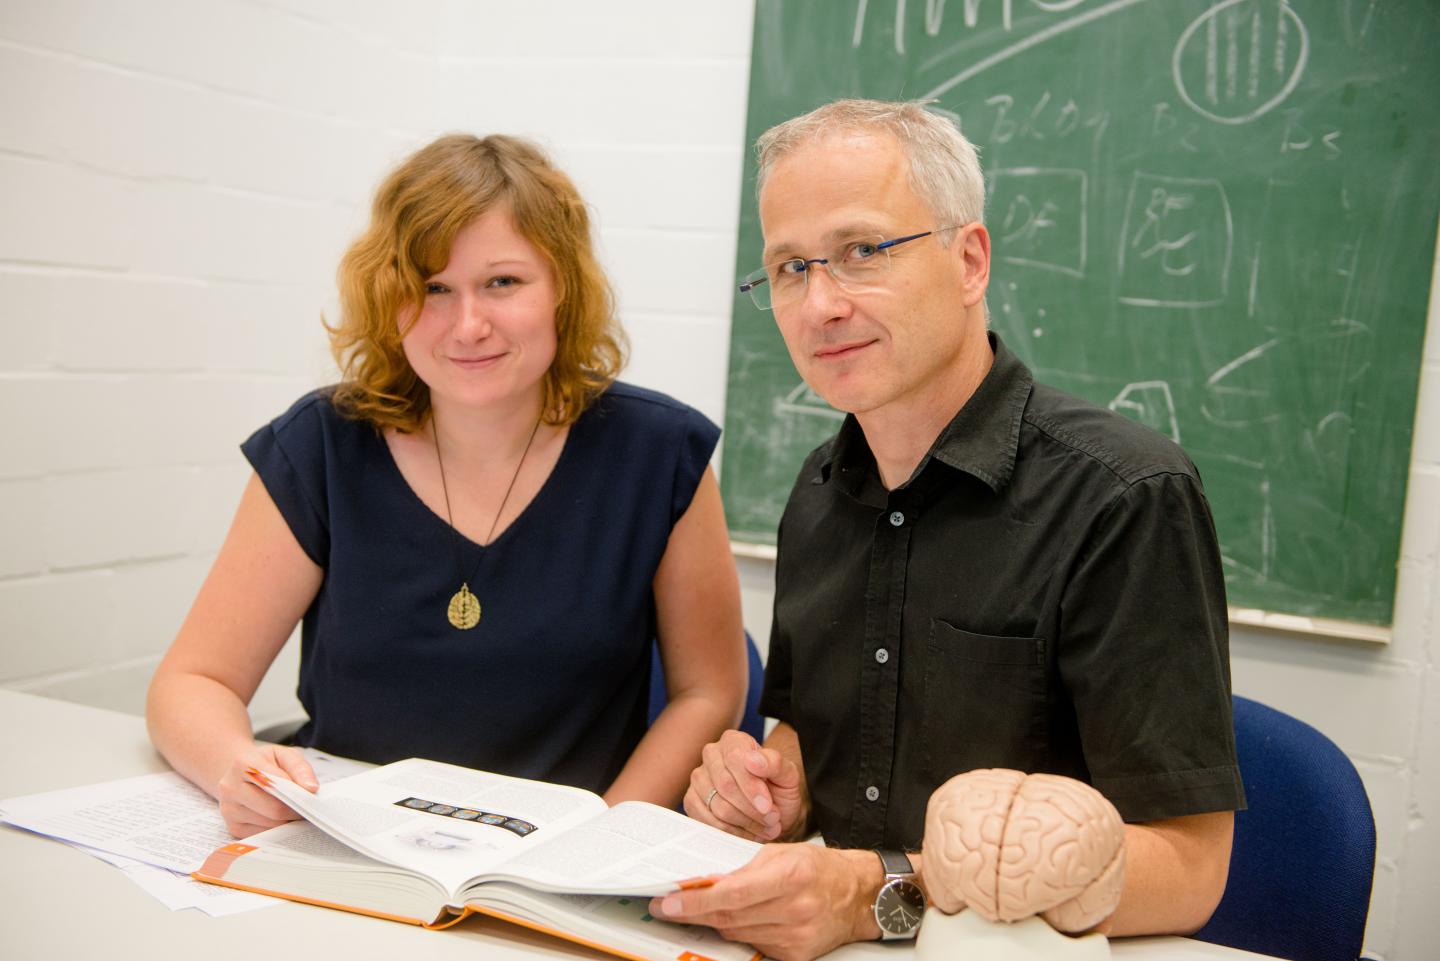 Sabrina Schenk and Boris Suchan, Ruhr-Universität Bochum